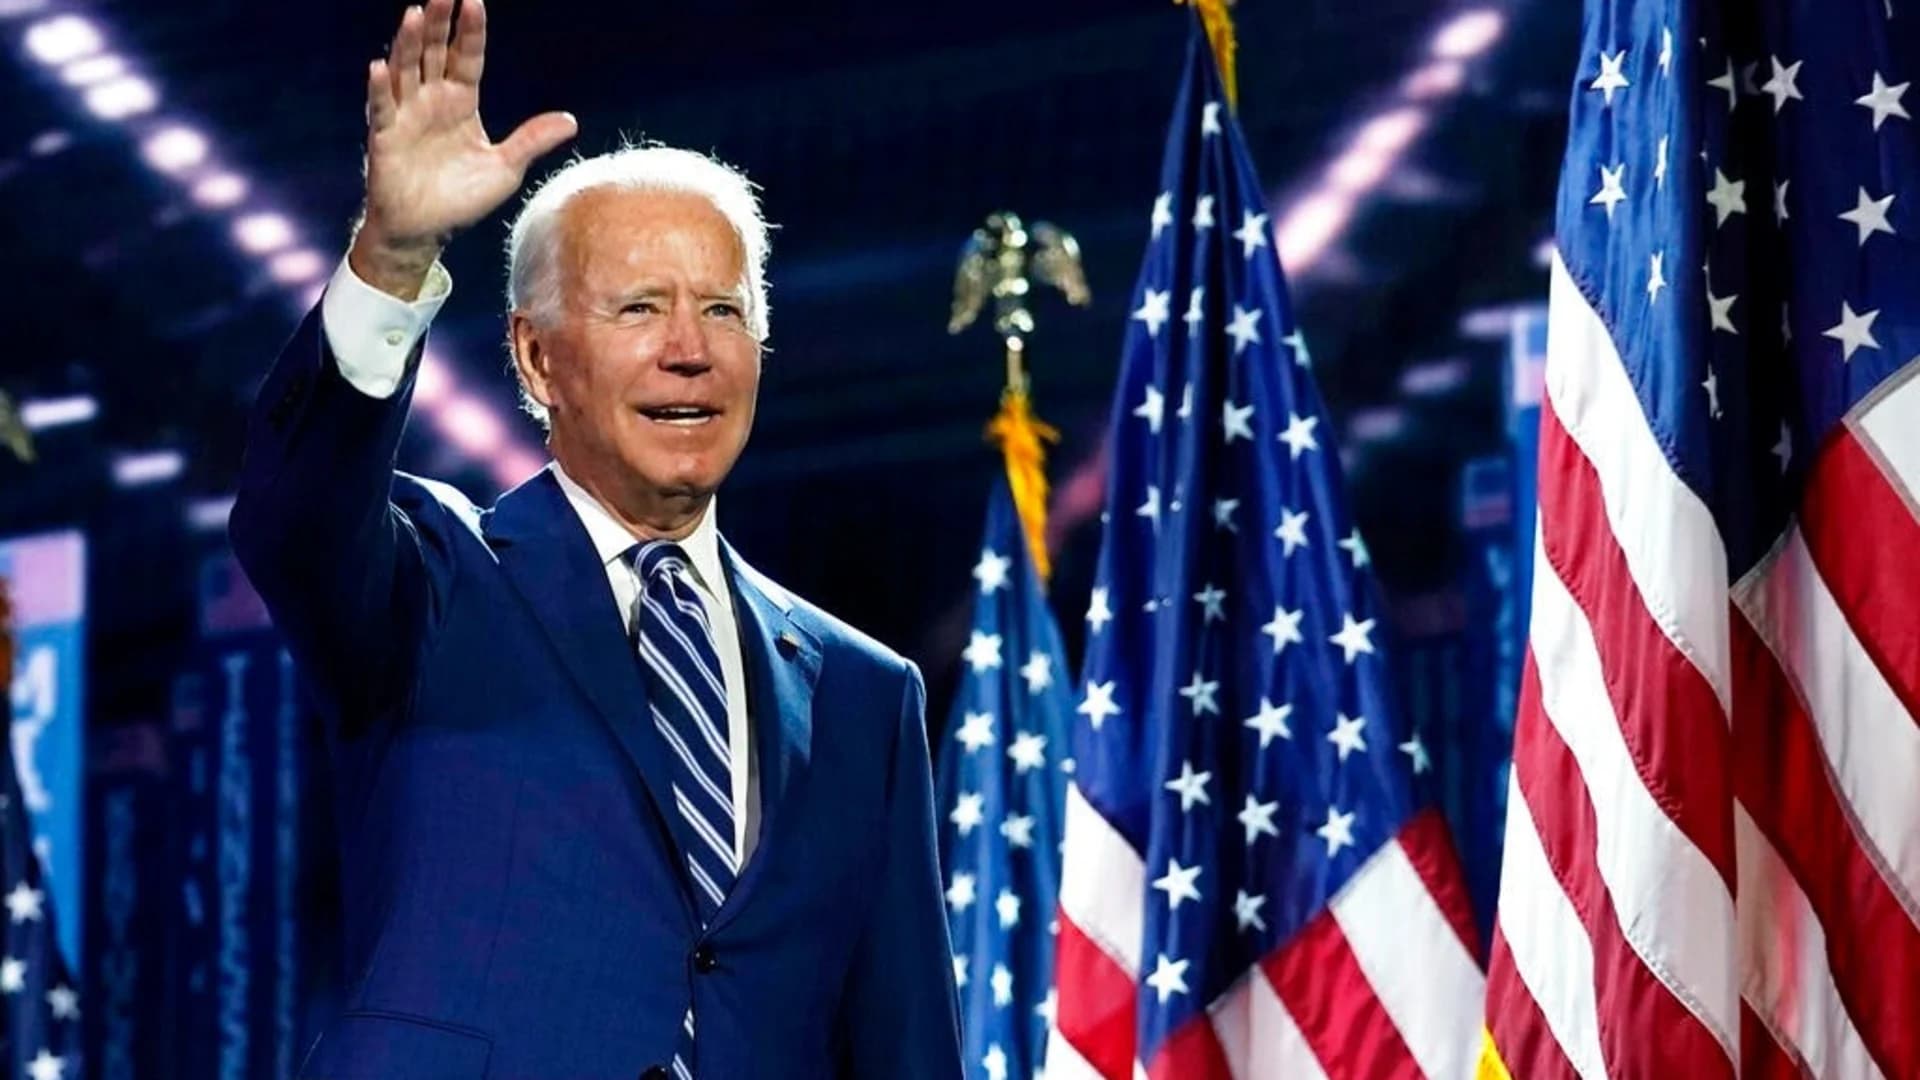 Joe Biden's Democratic nomination acceptance speech - en Español